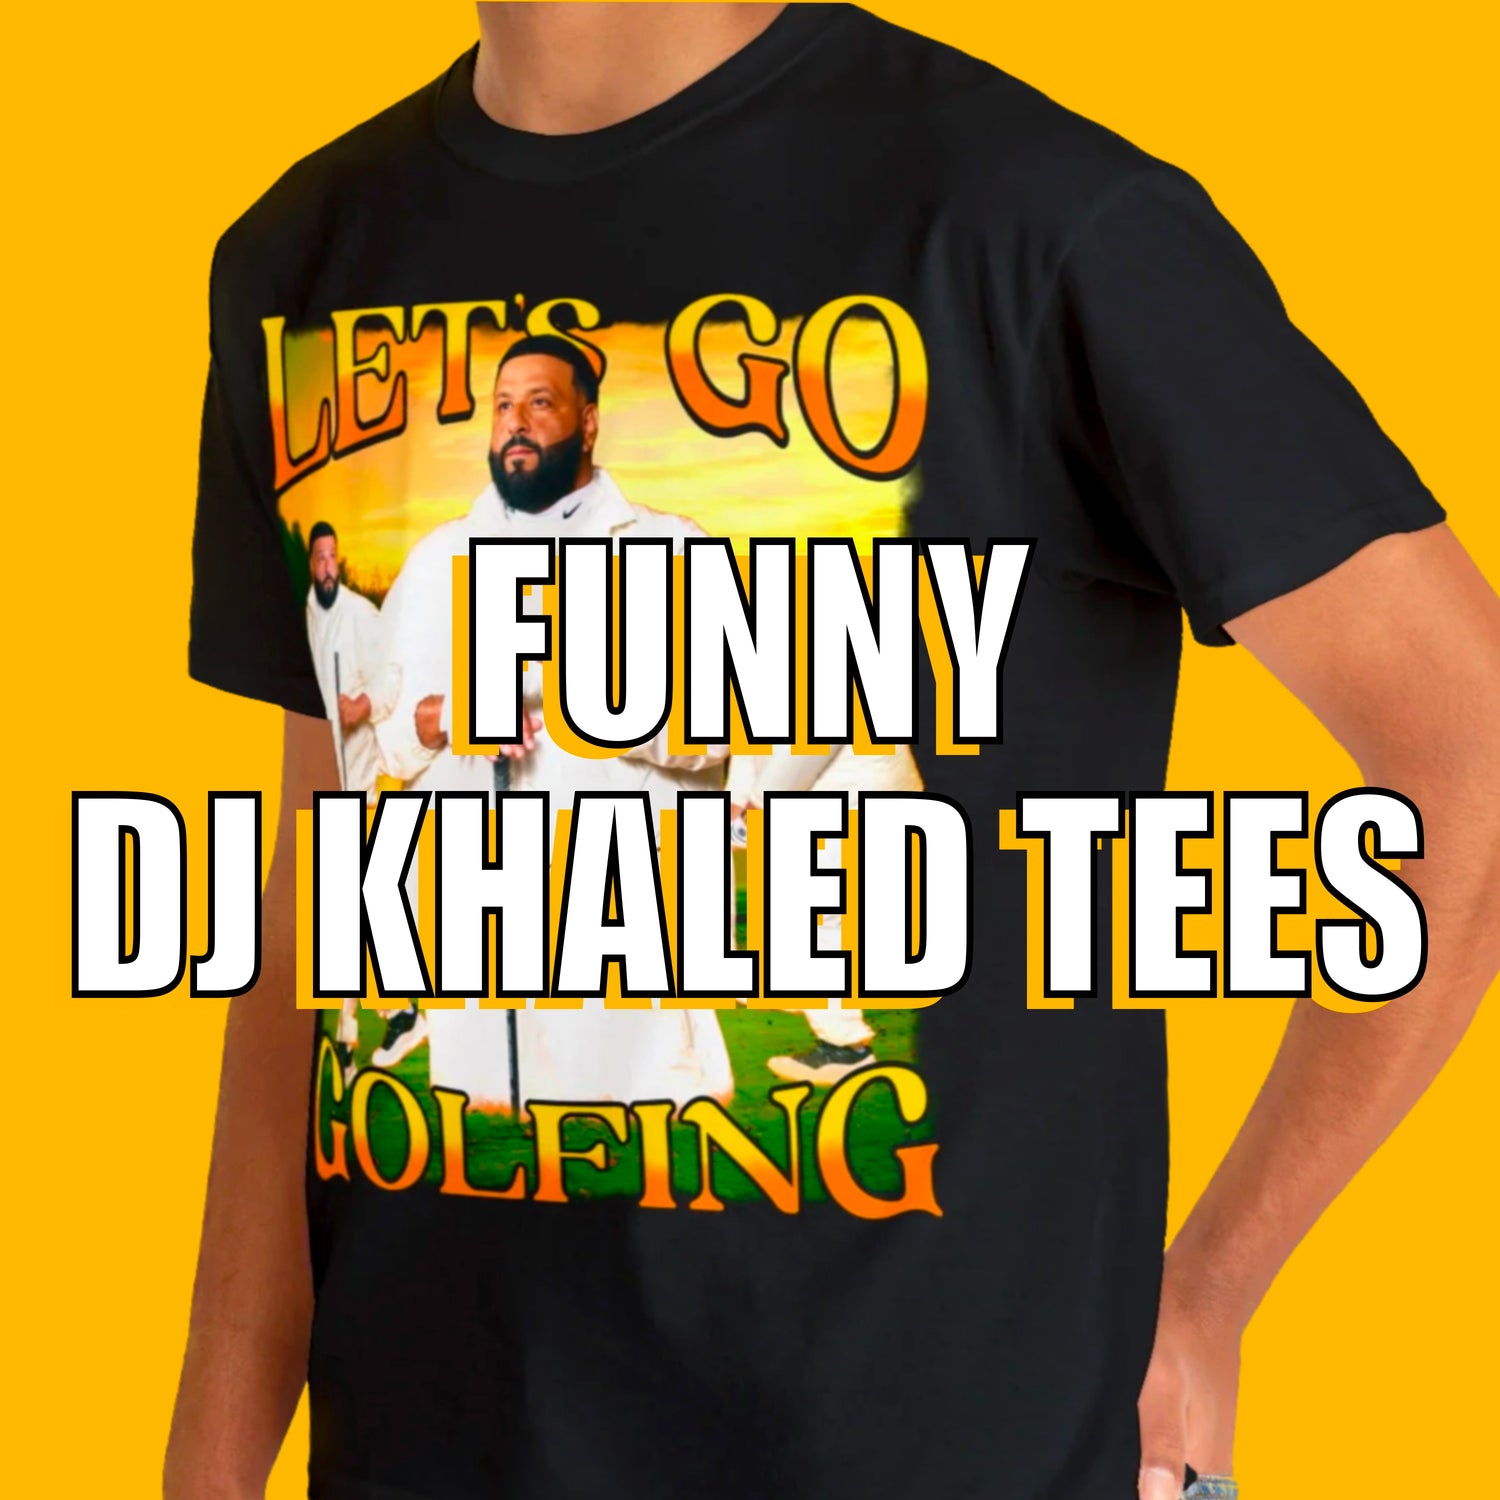 DJ Khaled Tees